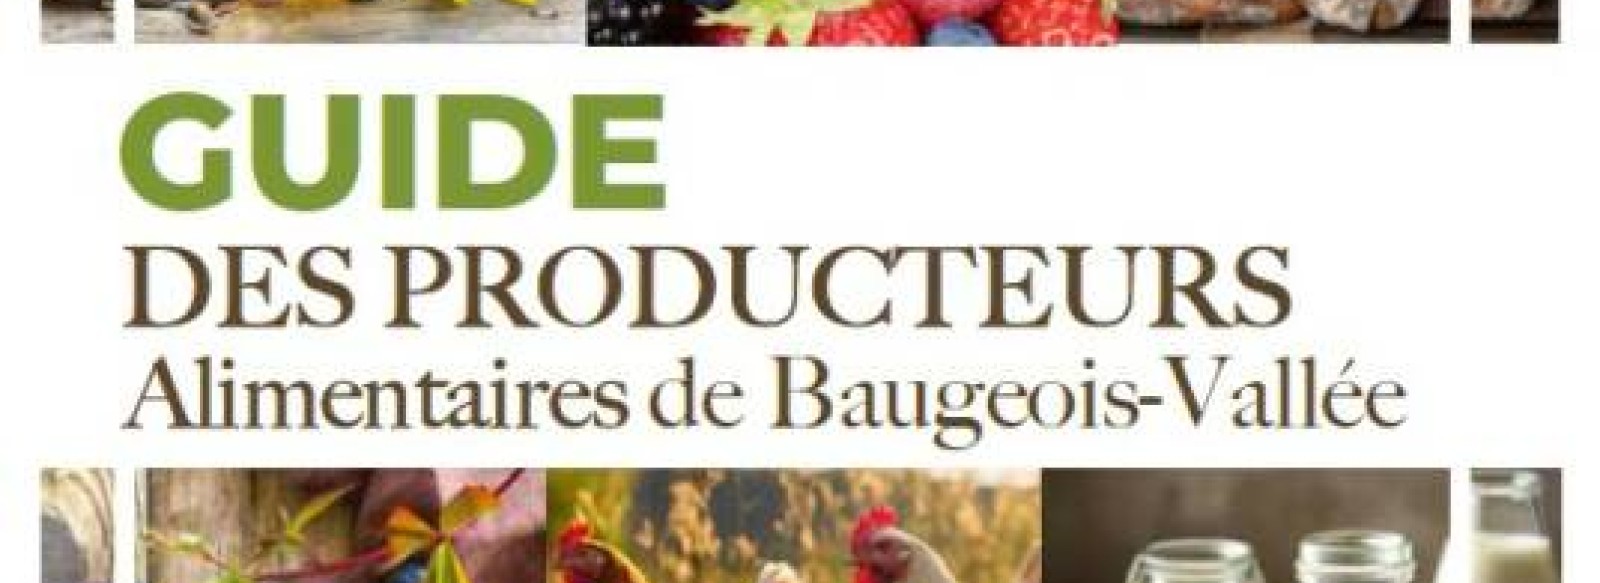 PRODUCTEURS ALIMENTAIRES DE BAUGEOIS-VALLEE